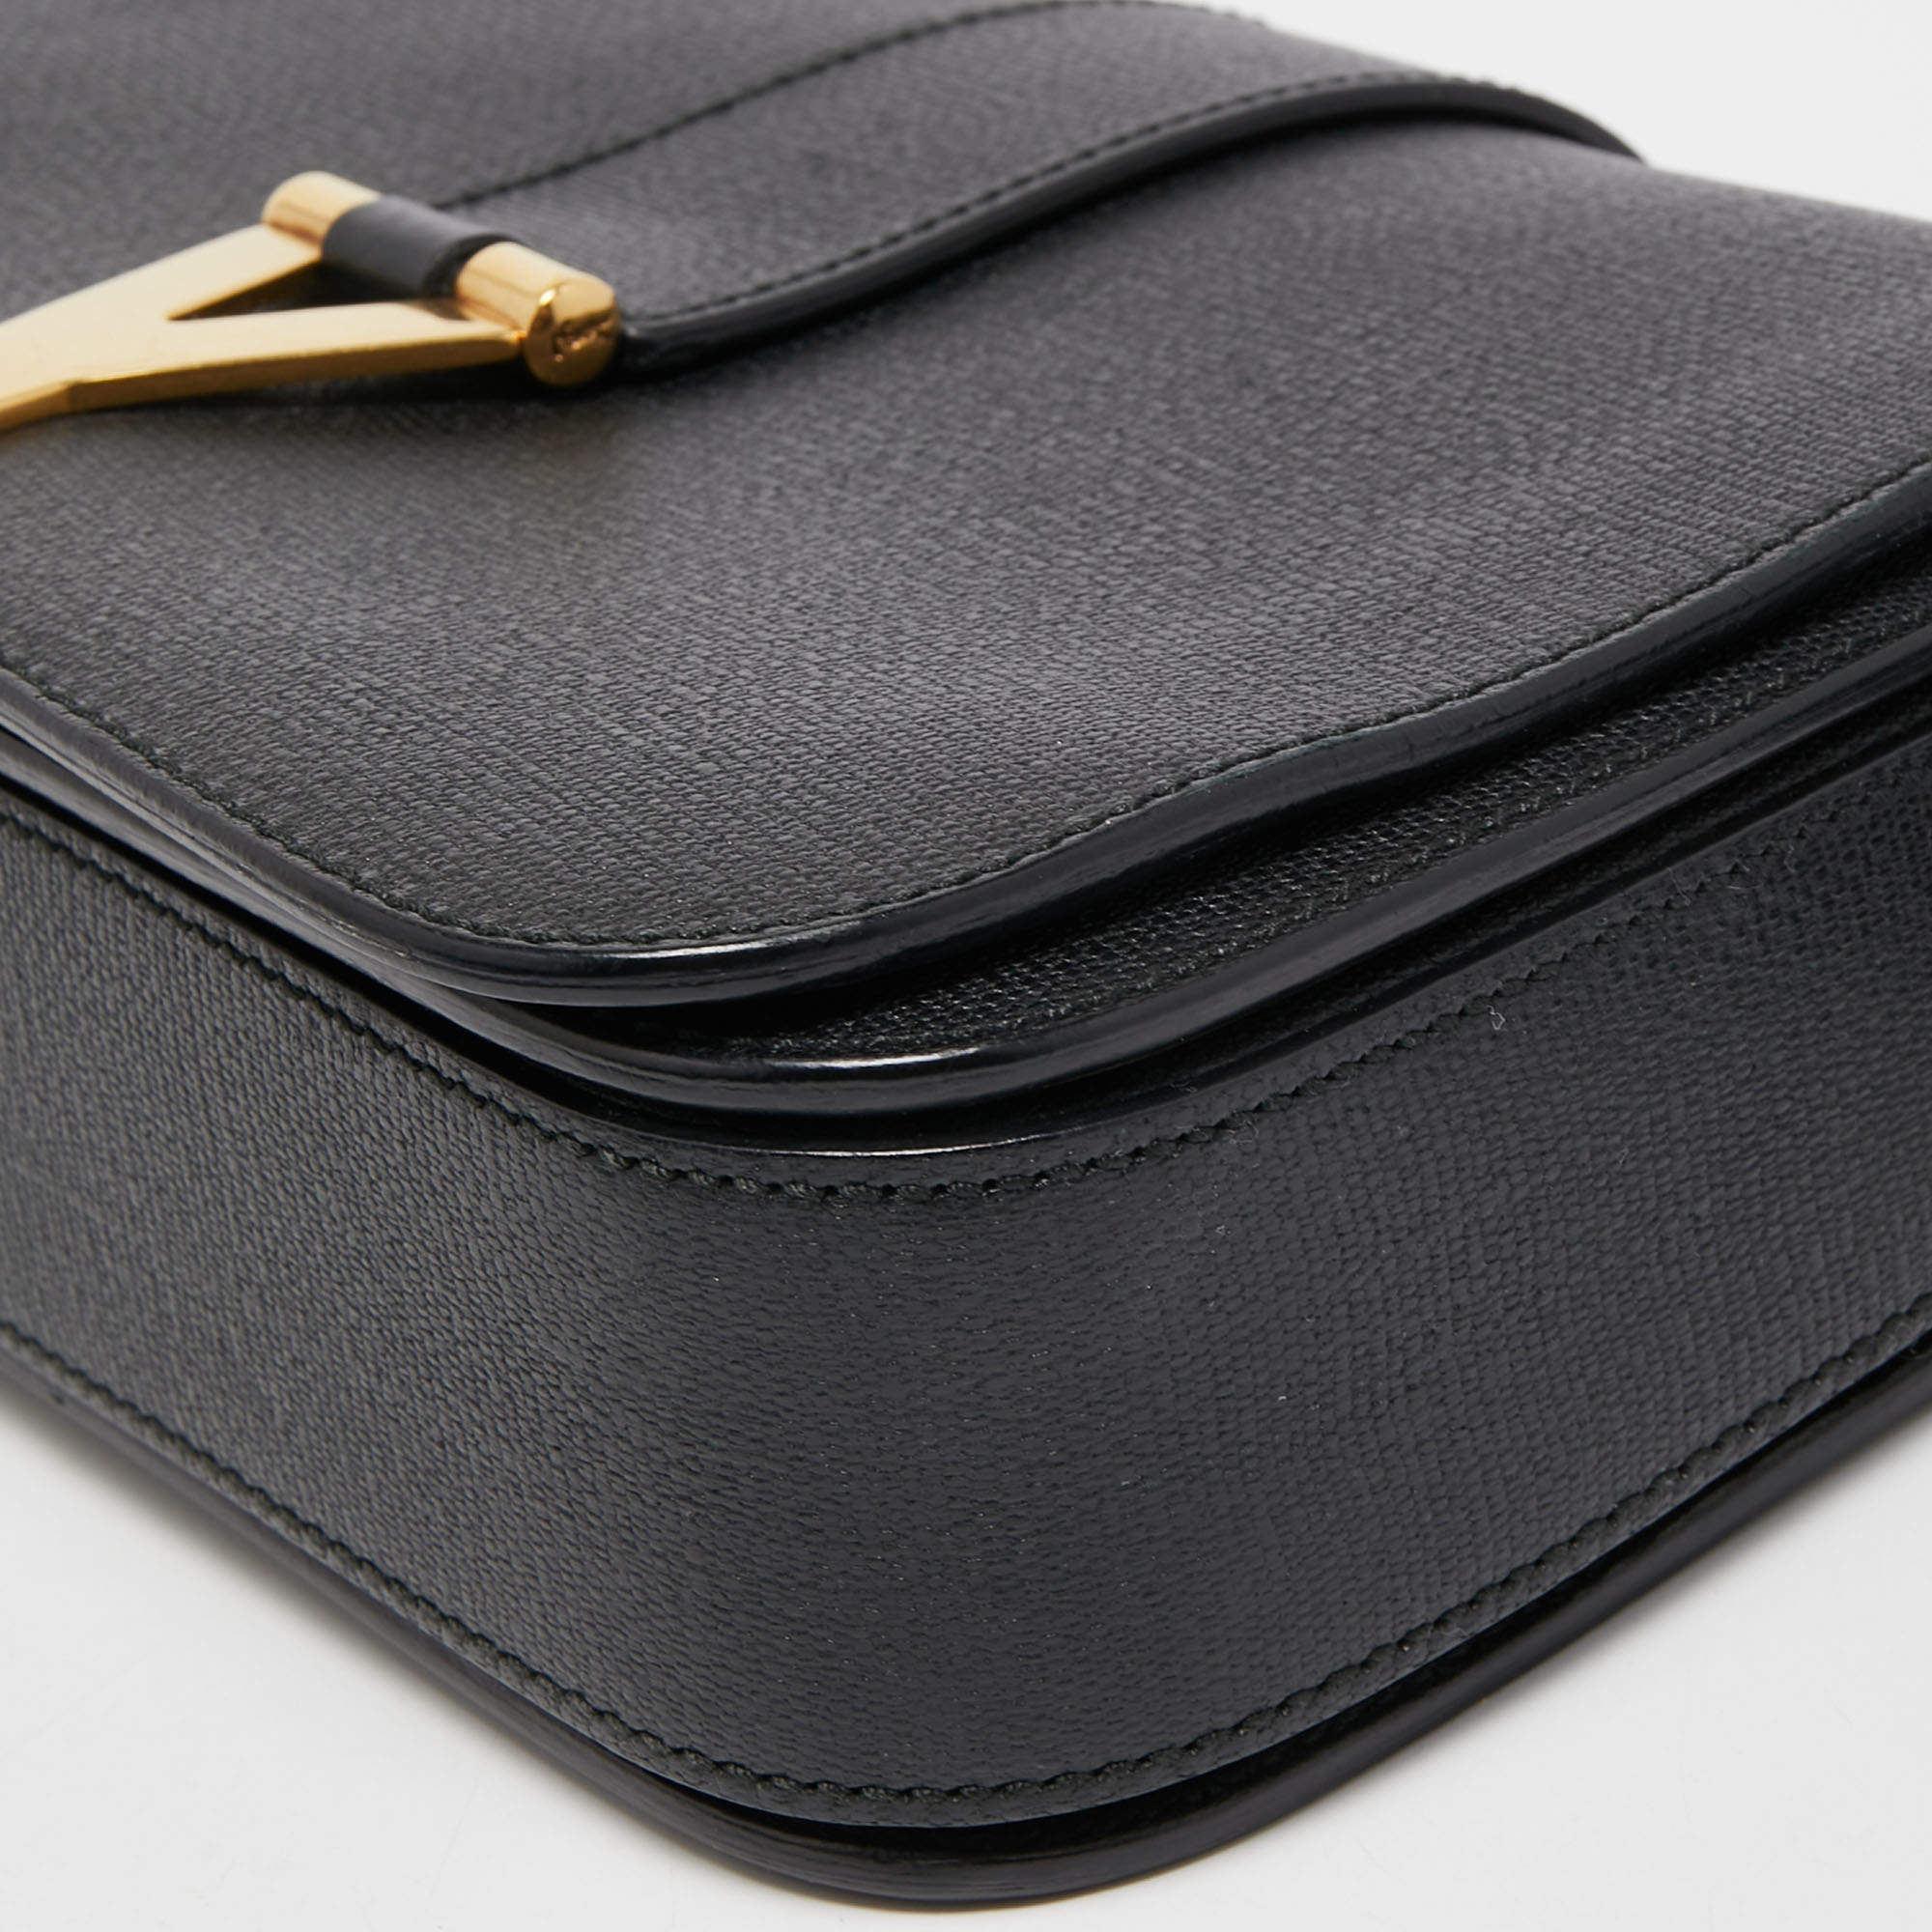 SAINT LAURENT Textured Patent Large ChYc Flap Bag Black 88207